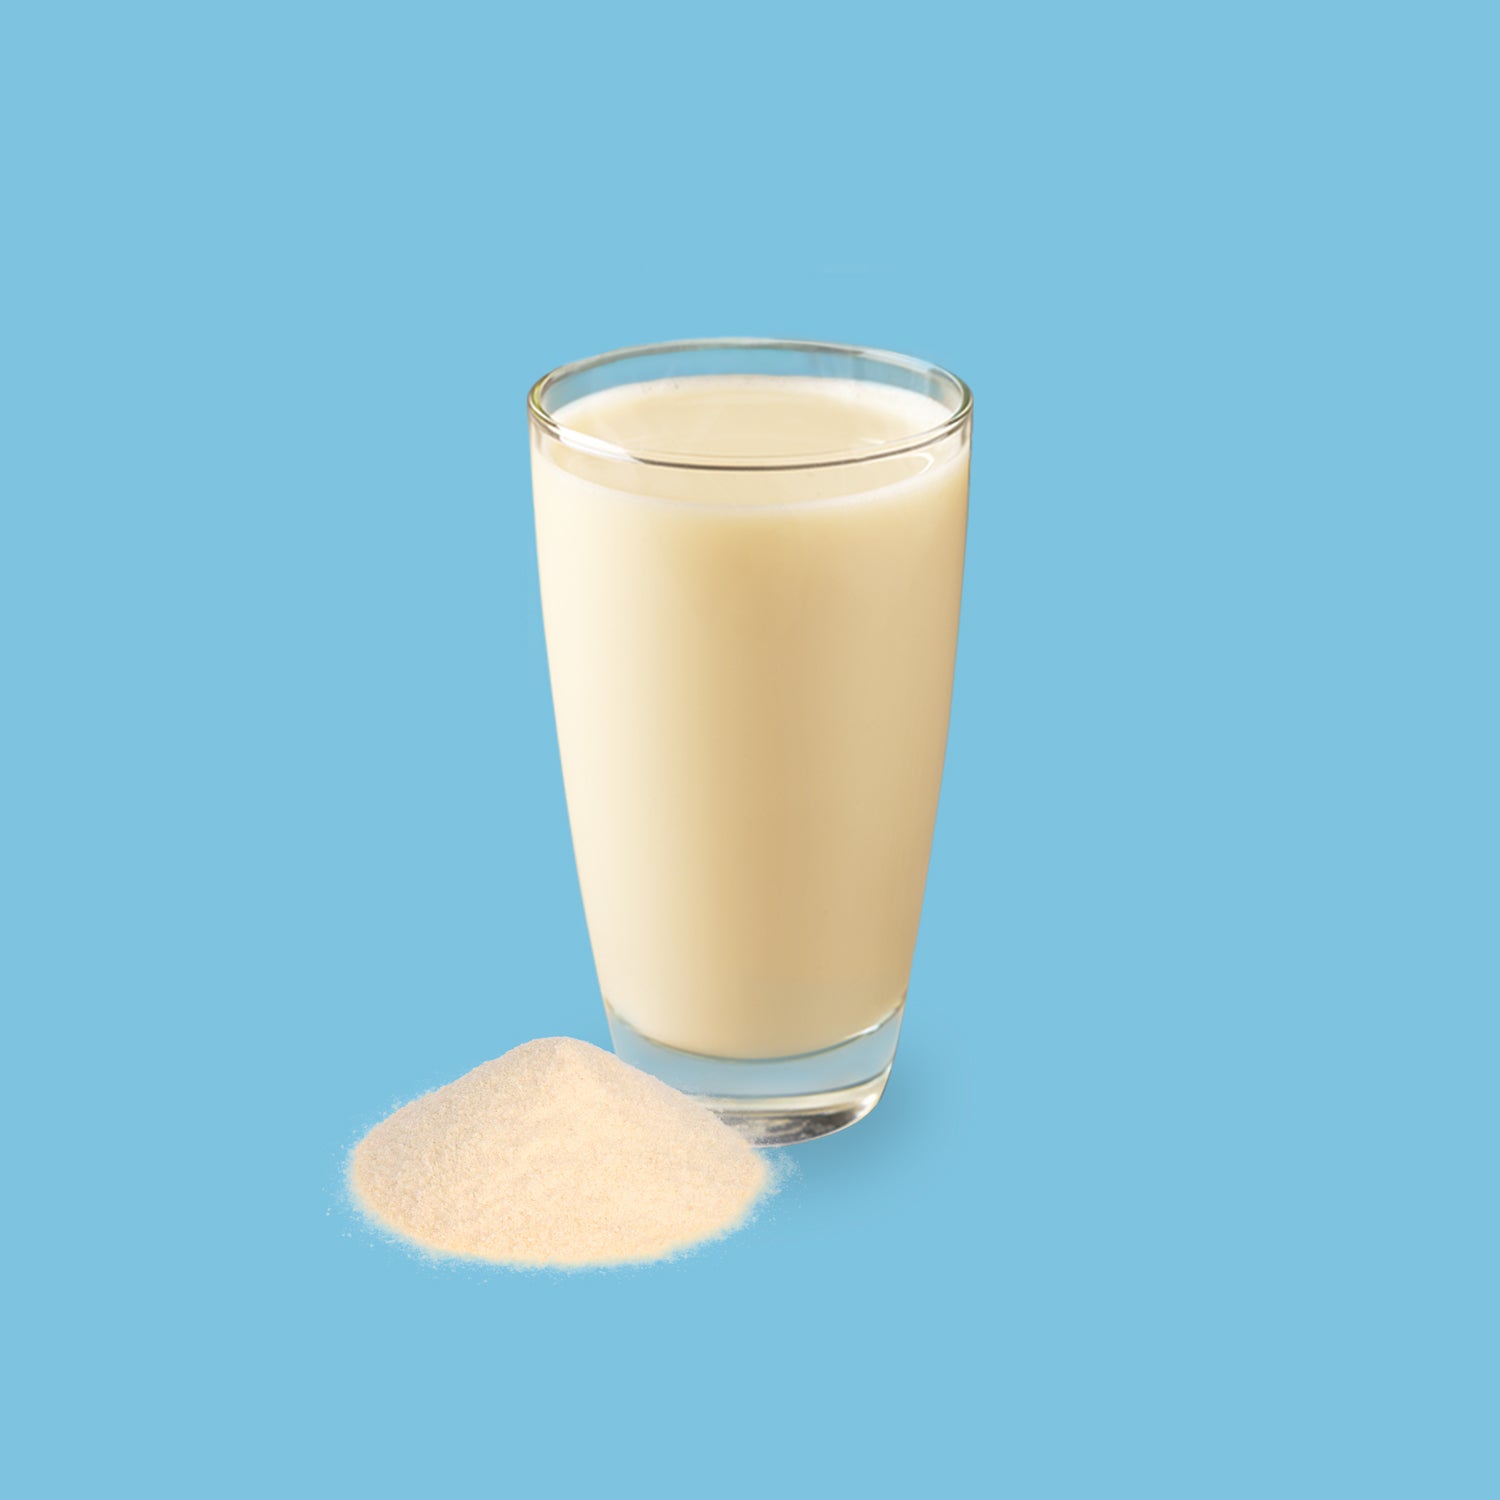 Drinkmich Hafermilchpulver mit Calcium perfekt für Kleinkinder kleiner Haufen Pulver vor Glas mit cremiger Hafermilch mit Calciumplus vor hellblauem Hintergrund